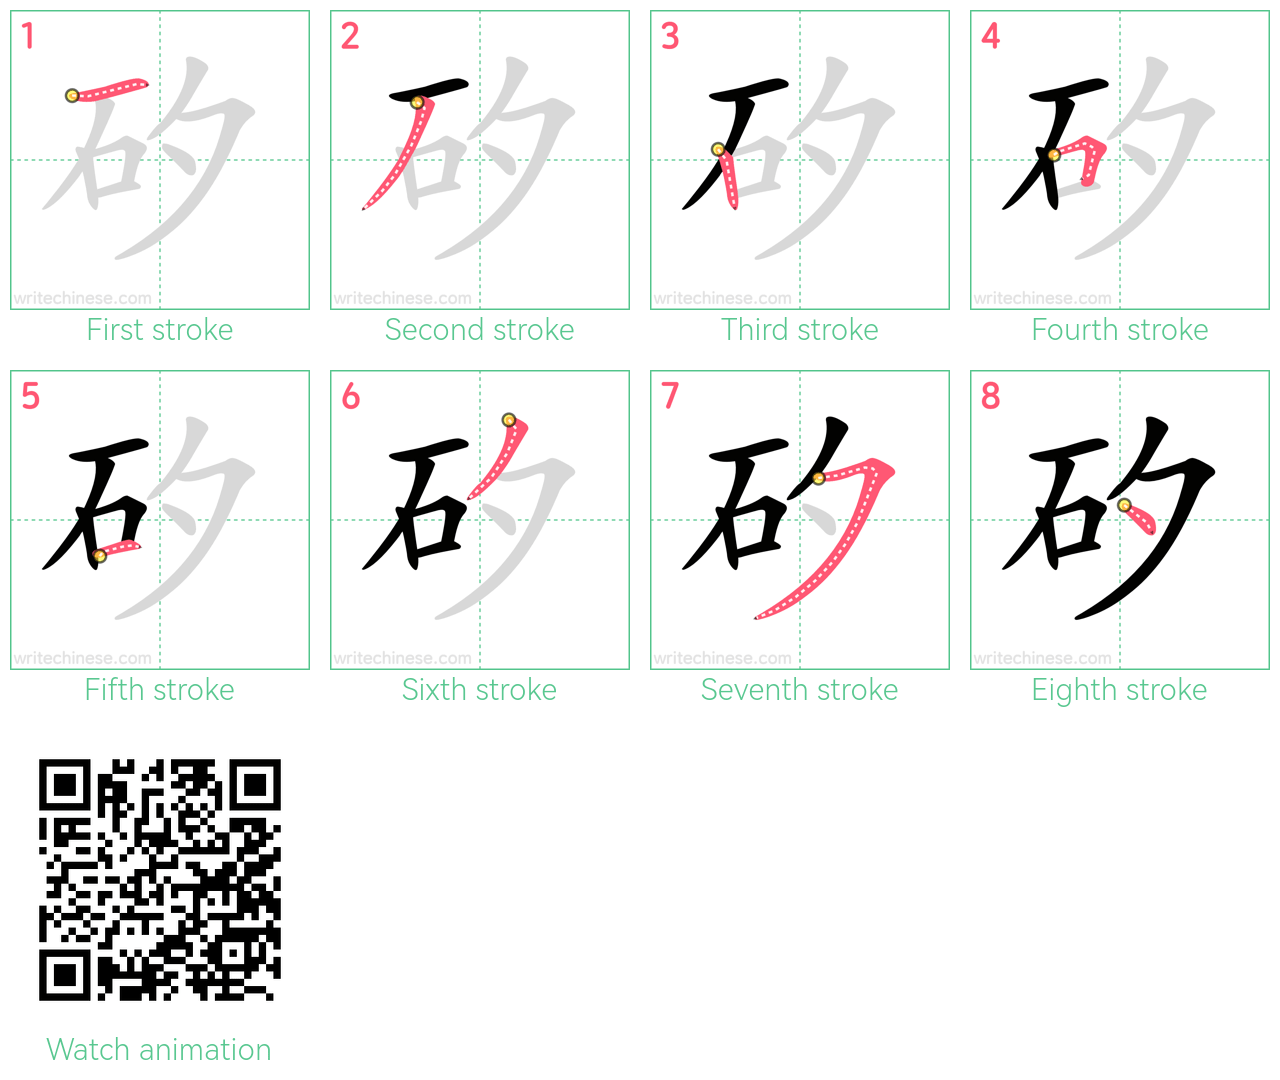 矽 step-by-step stroke order diagrams